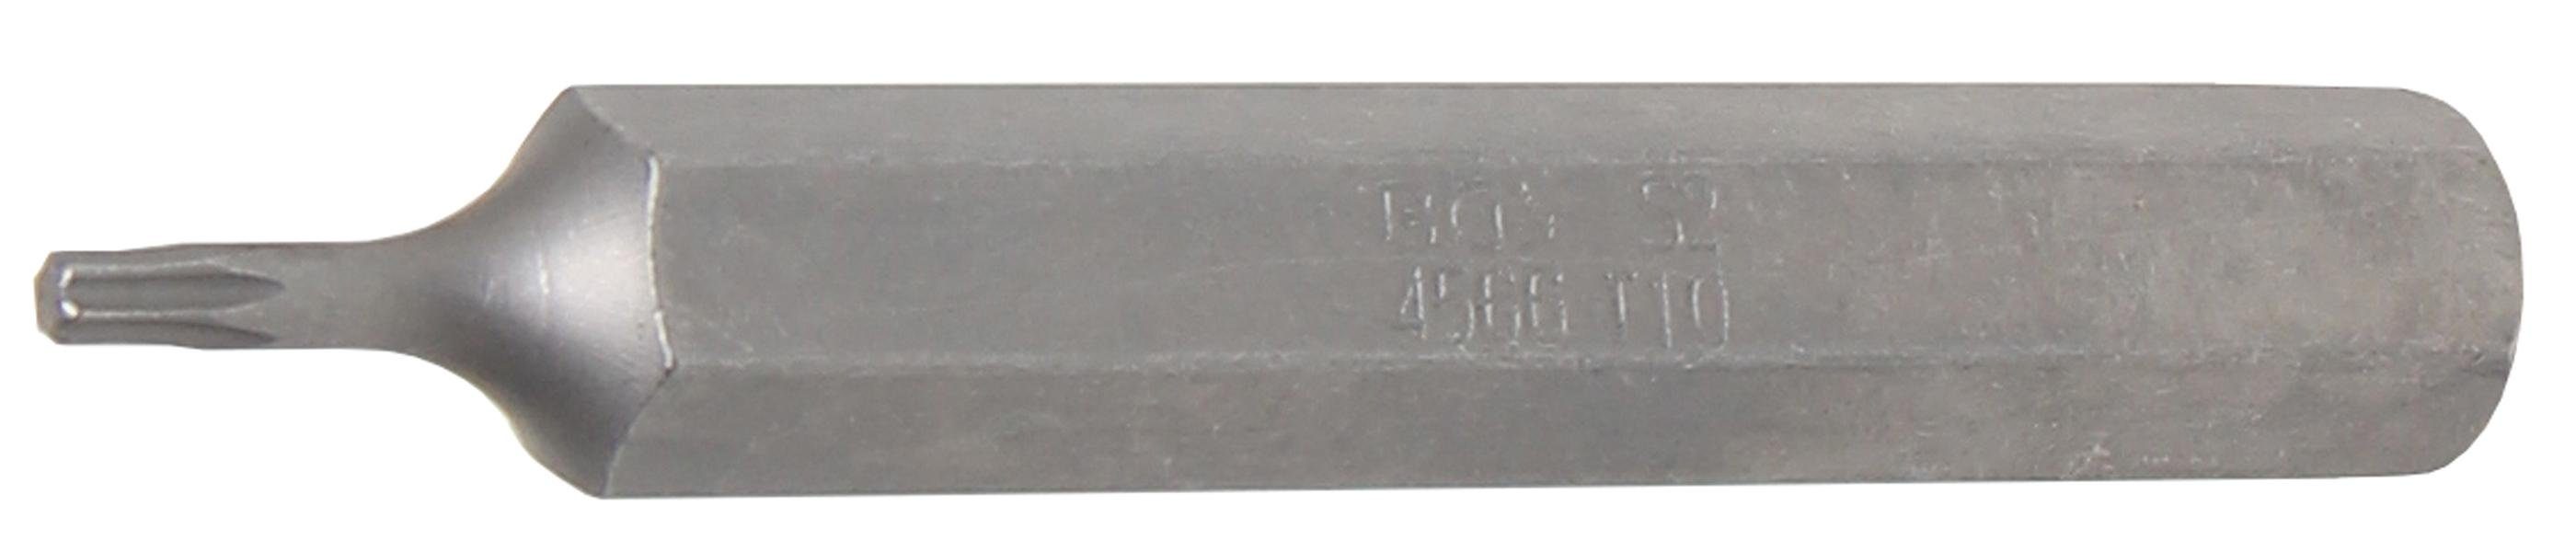 Länge technic mm T10 10 T-Profil (für BGS 75 Torx) (3/8), Antrieb Bit-Schraubendreher mm, Außensechskant Bit,